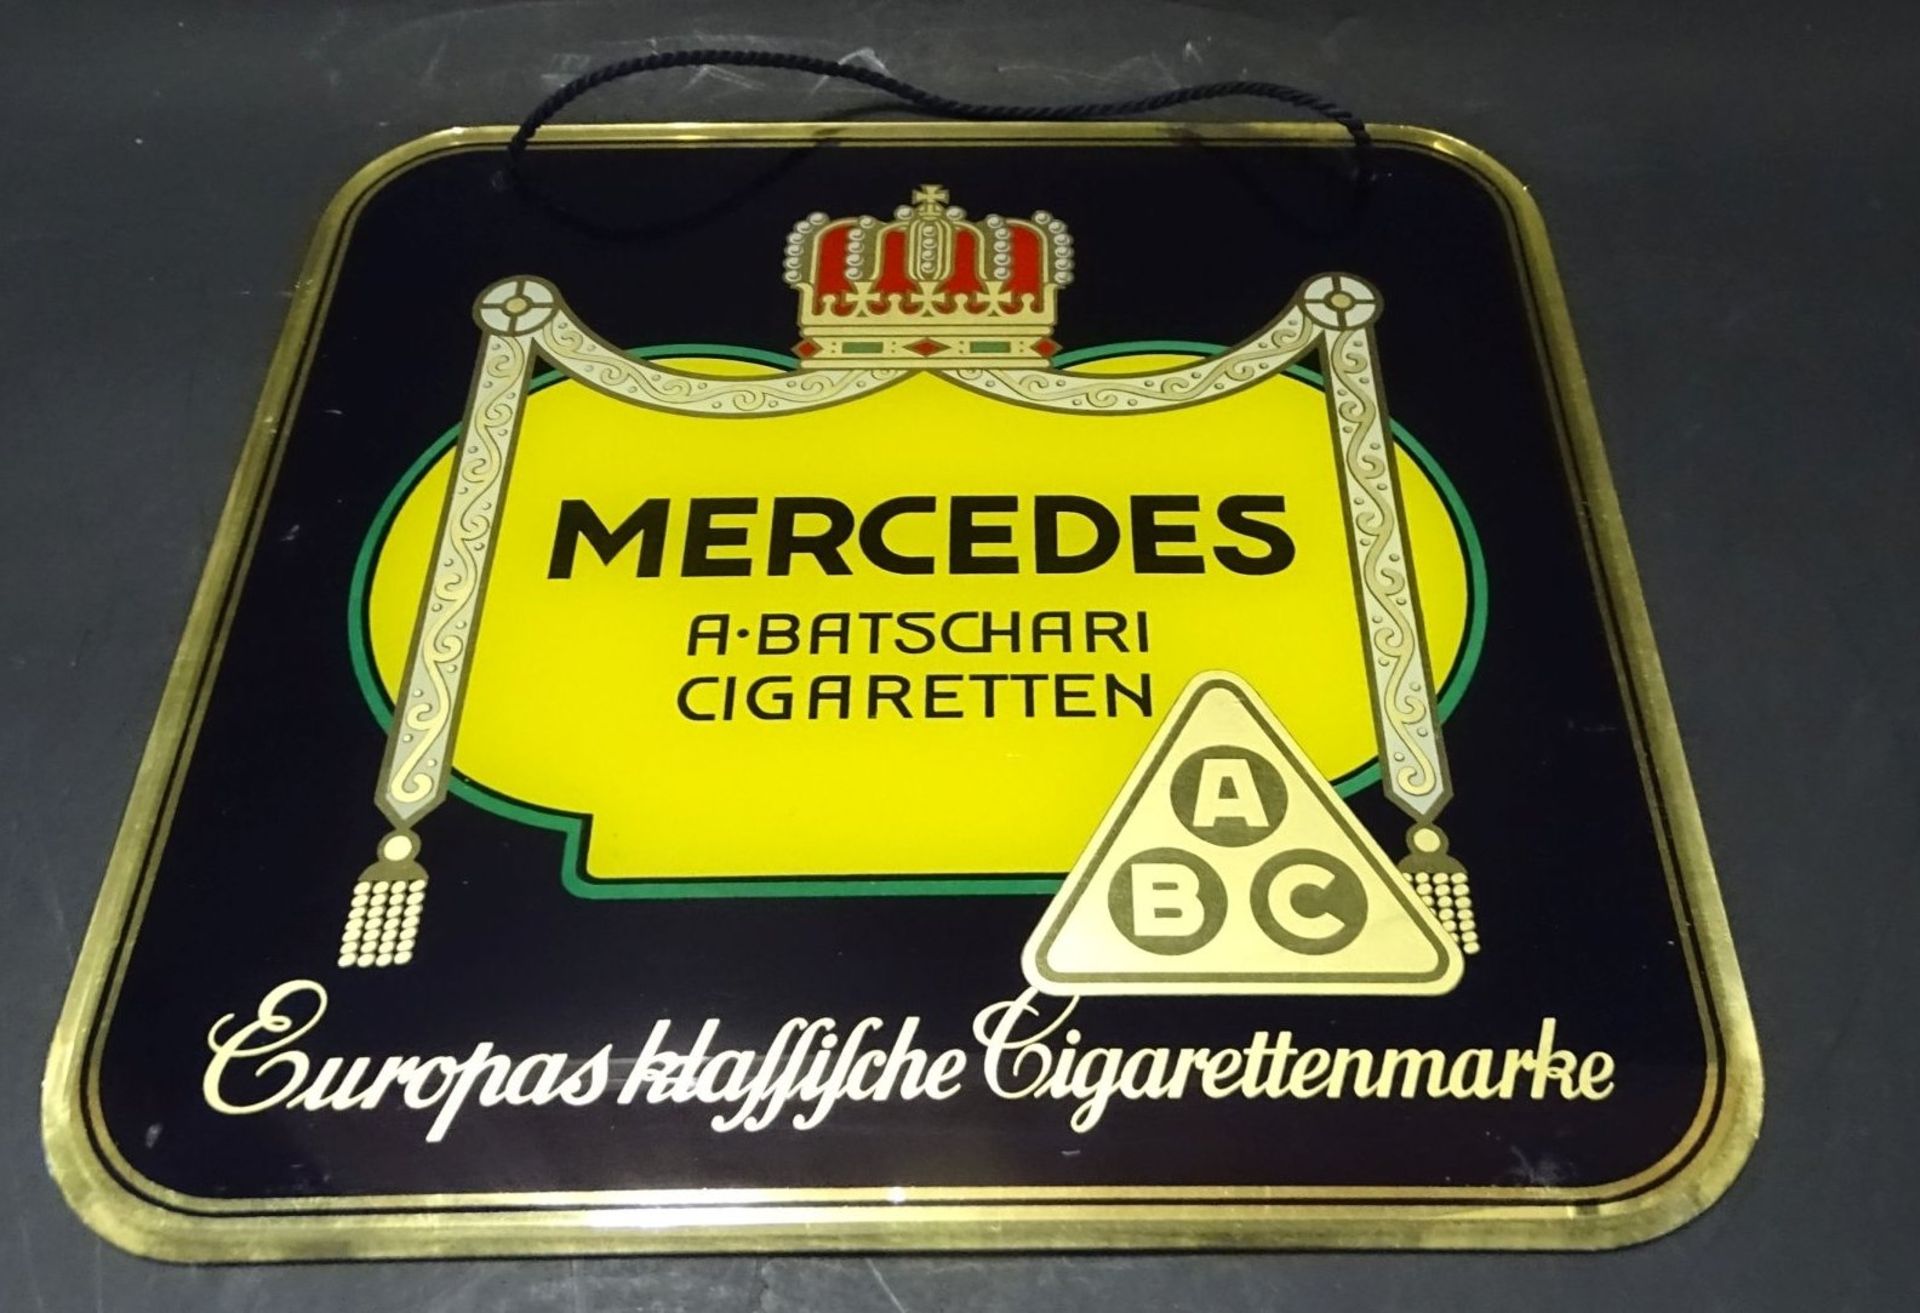 Glas-Werbeschild "Mercedes" Cigaretten, 30-40-er Jahre, 28x28 cm - Bild 3 aus 4